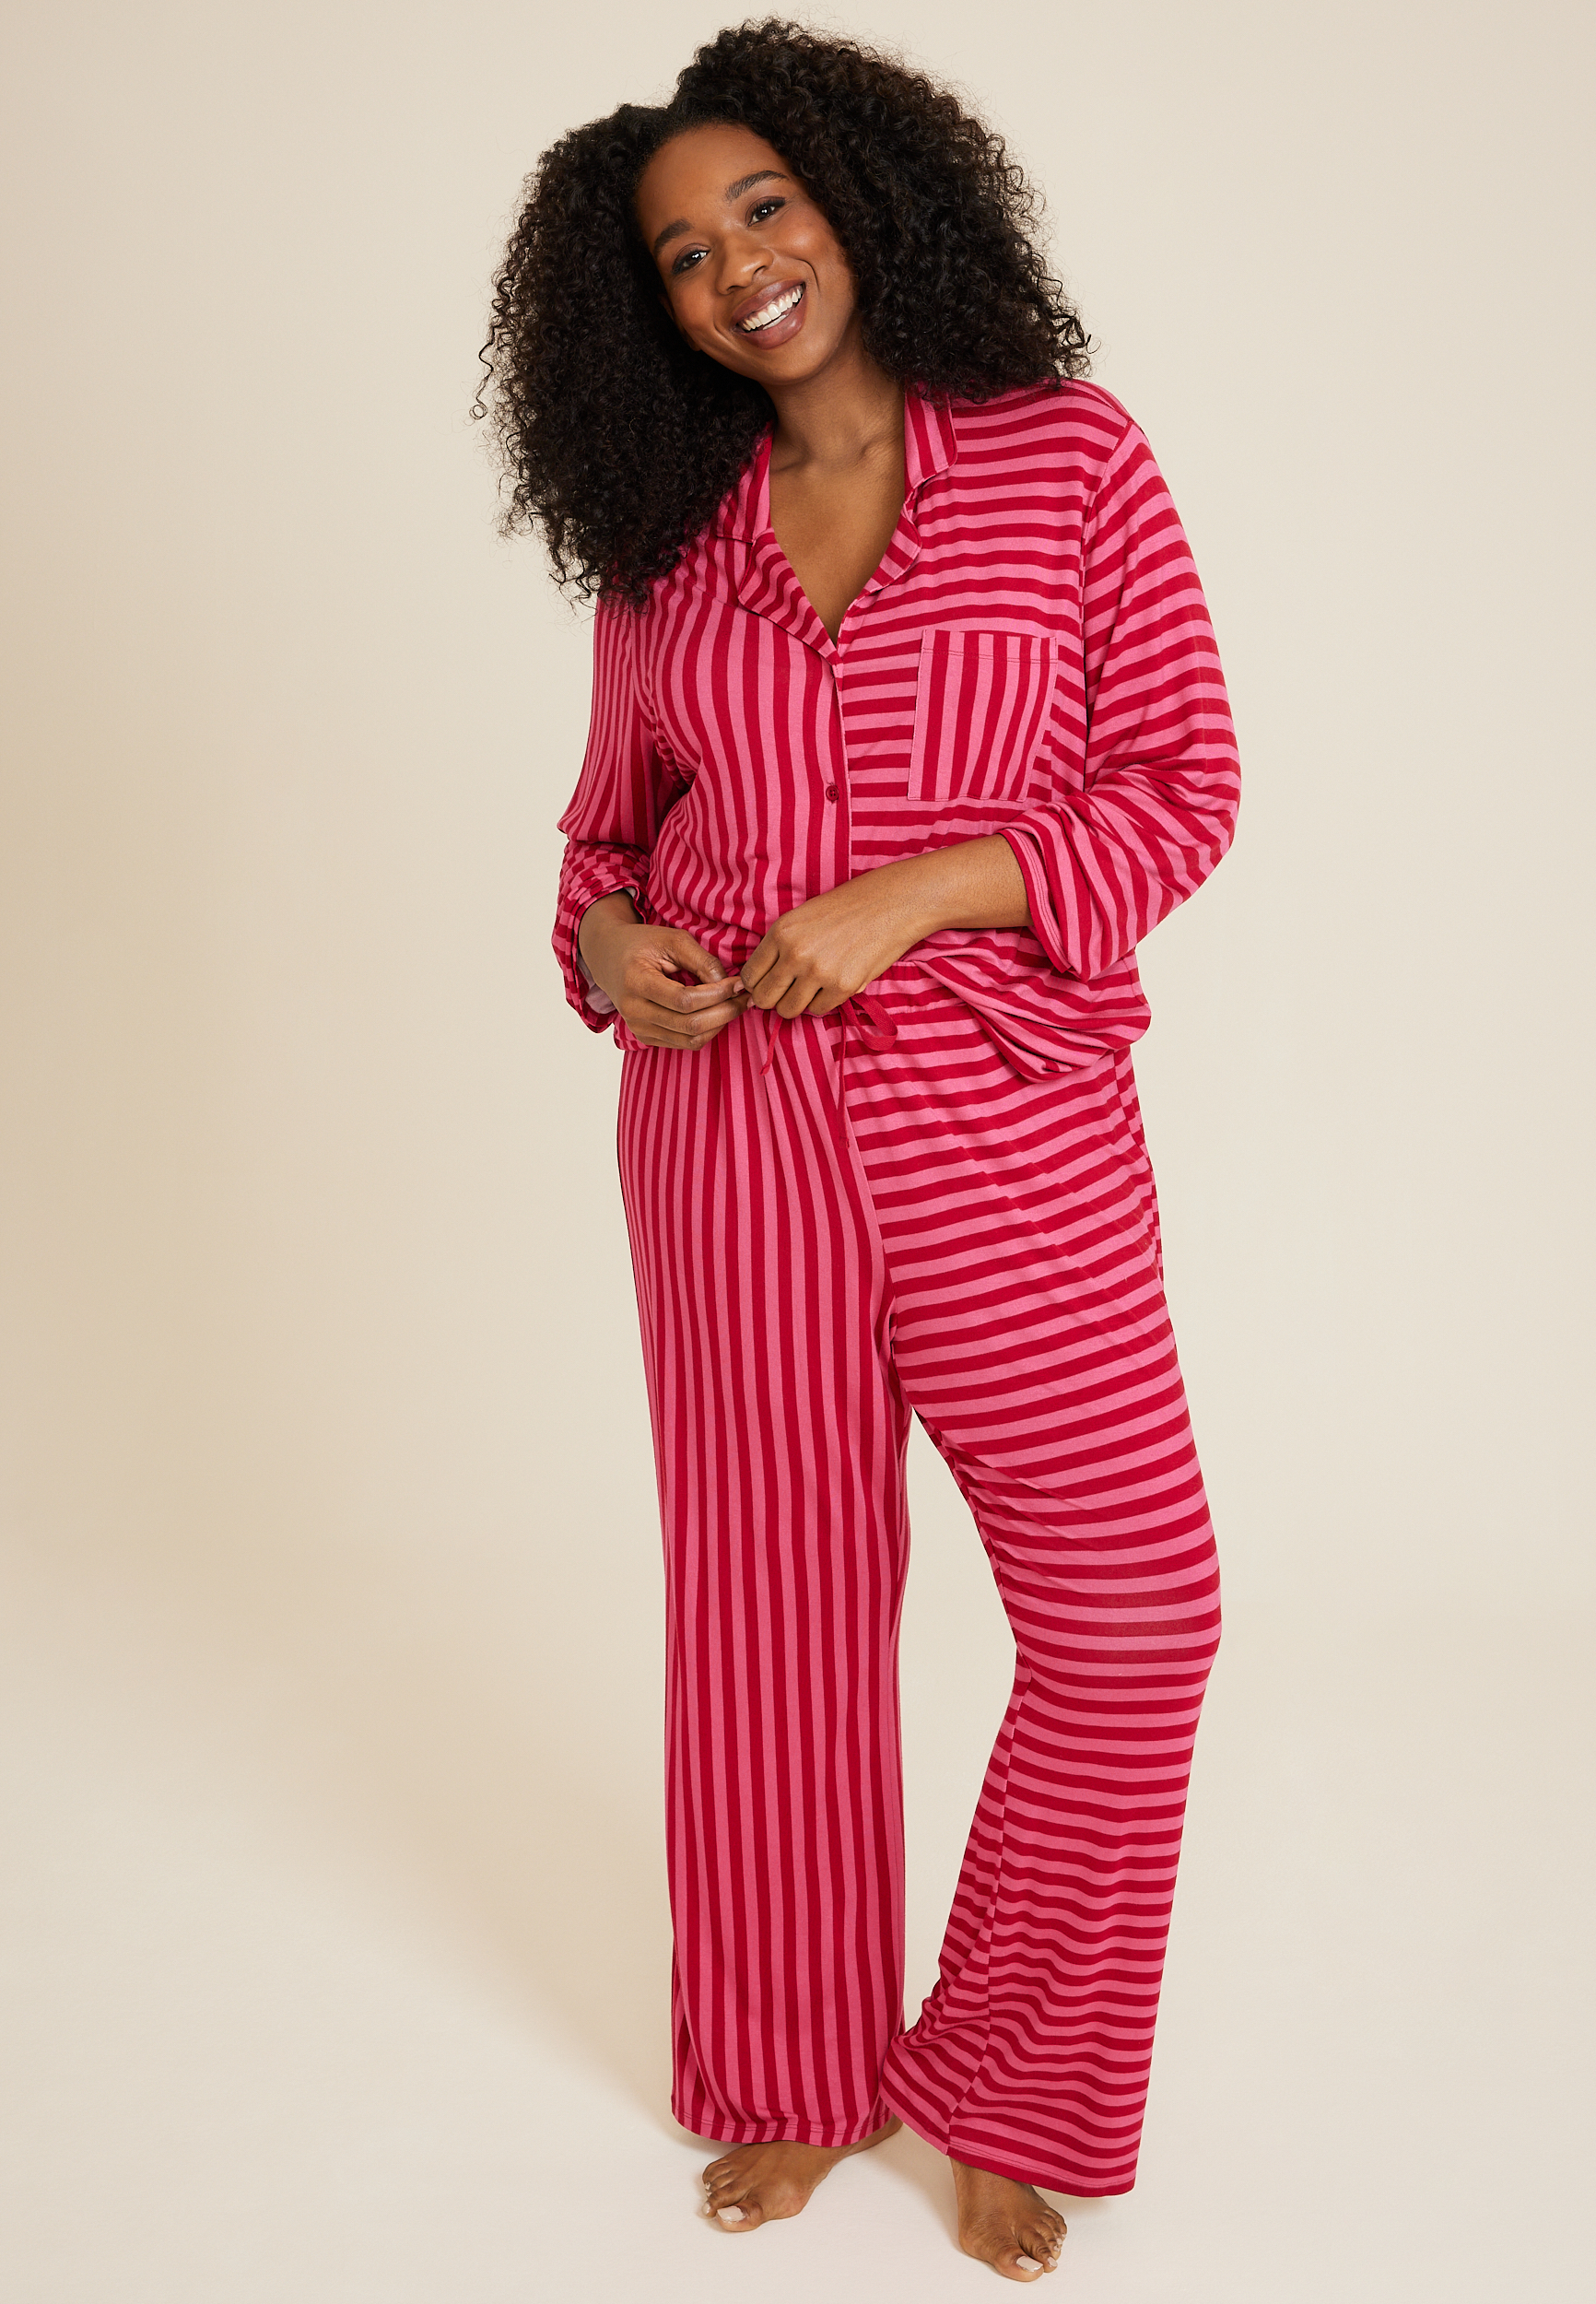  STJDM Nightgown,Plus Size 5XL Cute Pajamas Sets Women